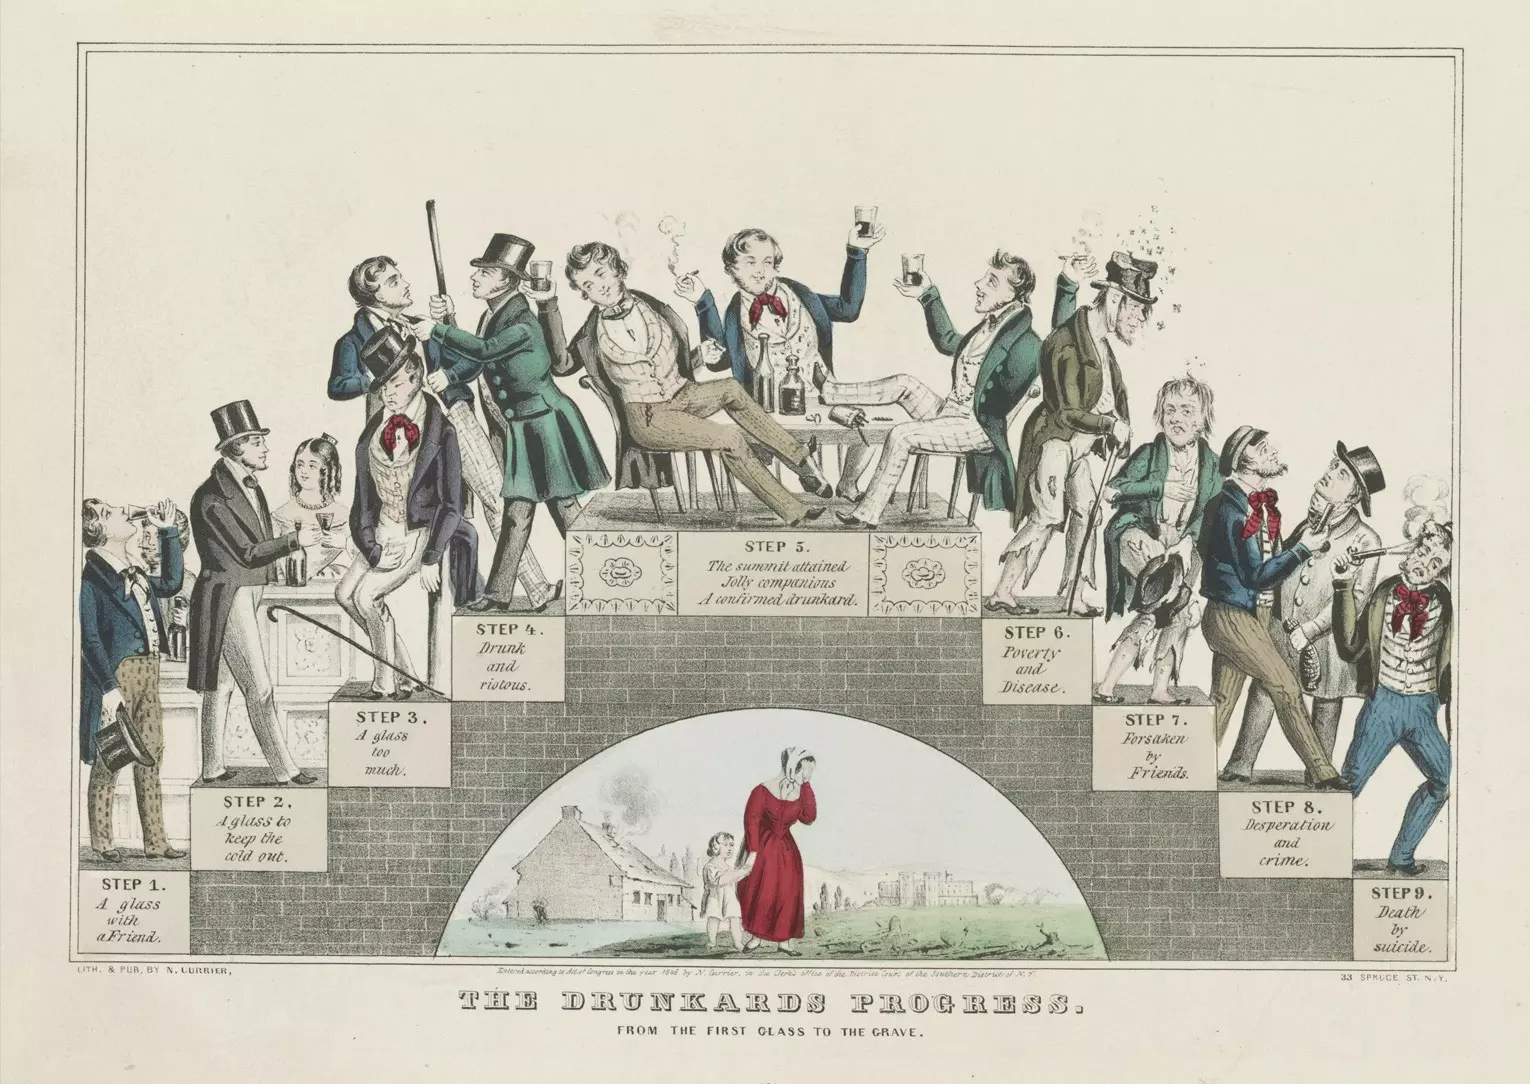 De levensloop van een dronkaard van het eerste glas tot het graf. Een litho vanNathaniel Currier ter ondersteuning van de drankmatiging, januari 1846. Beeld: Publiek domein. 